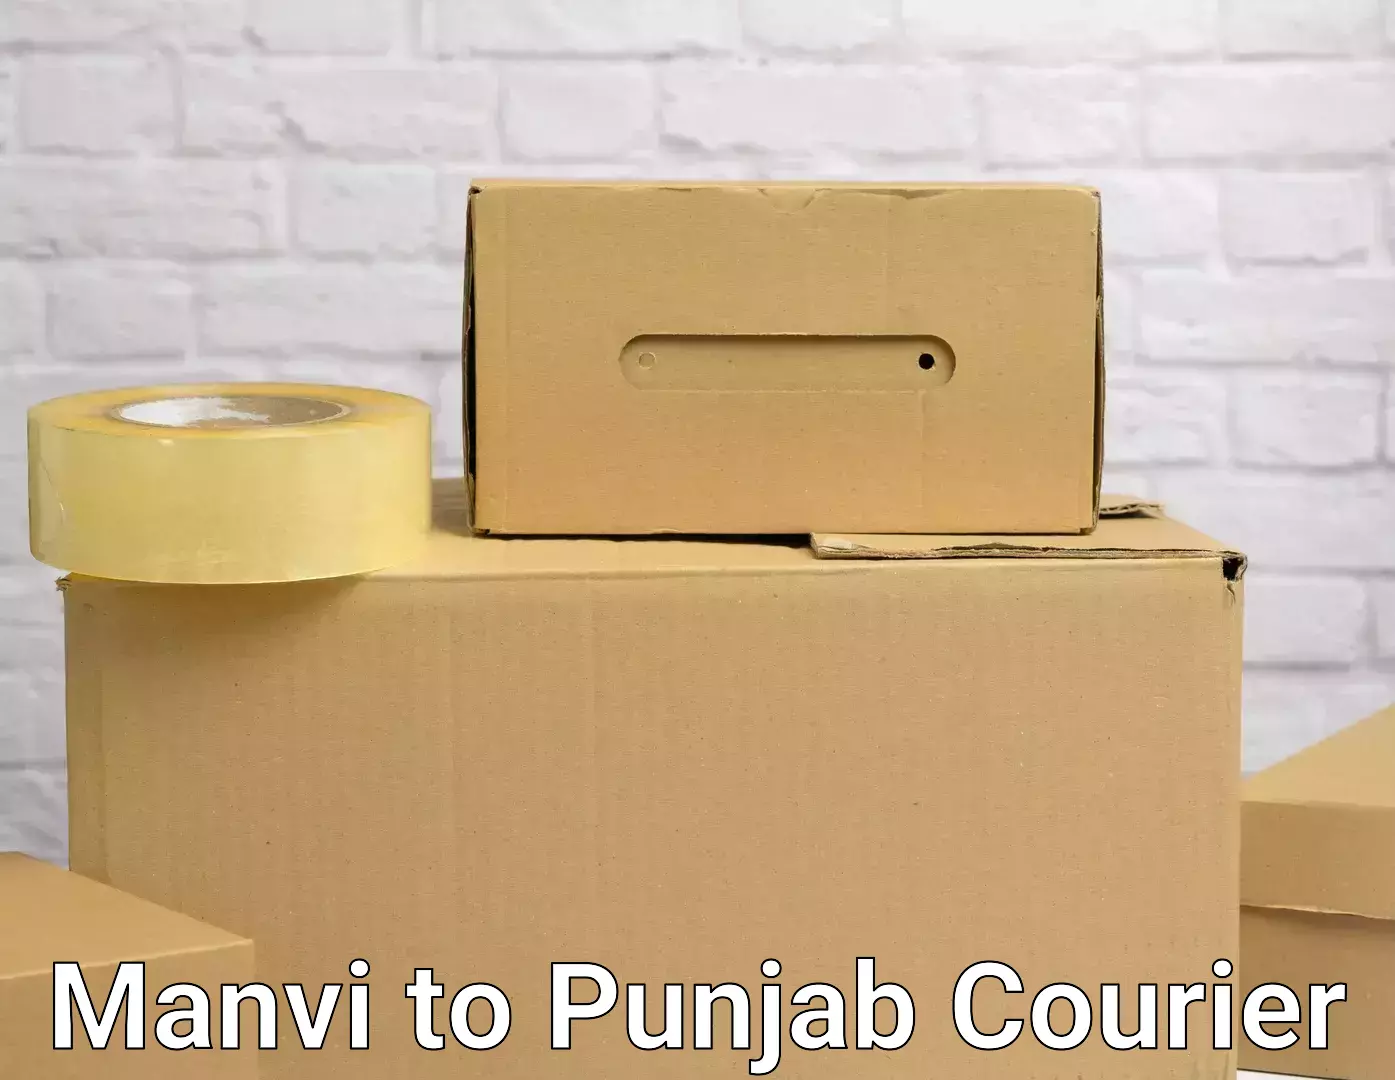 Furniture moving experts Manvi to Punjab